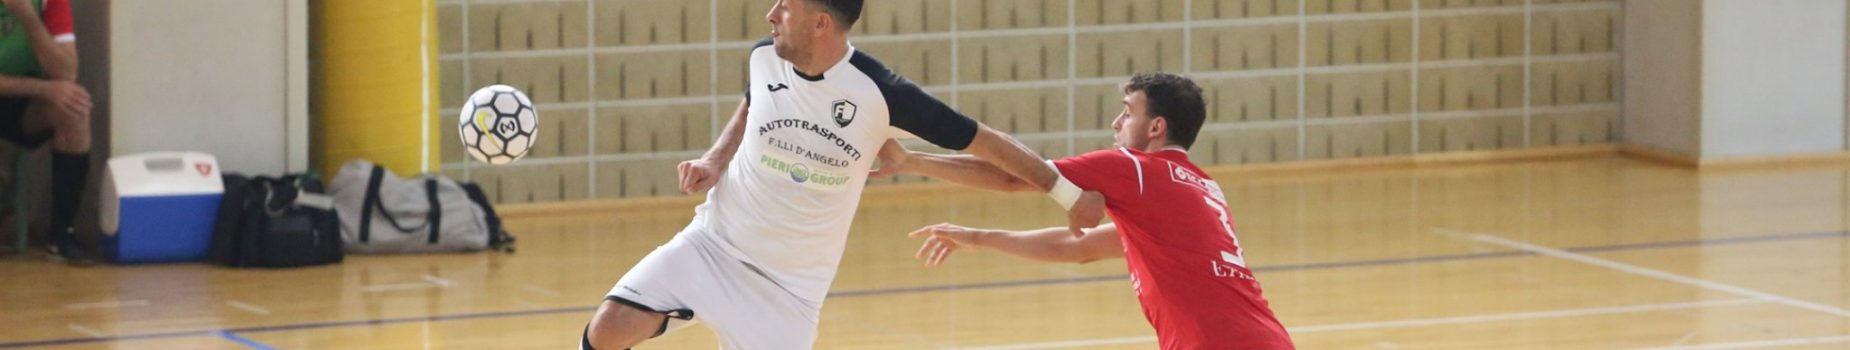 9° Campionato: Miti Vicinalis vs Futsal Cesena 5 – 2